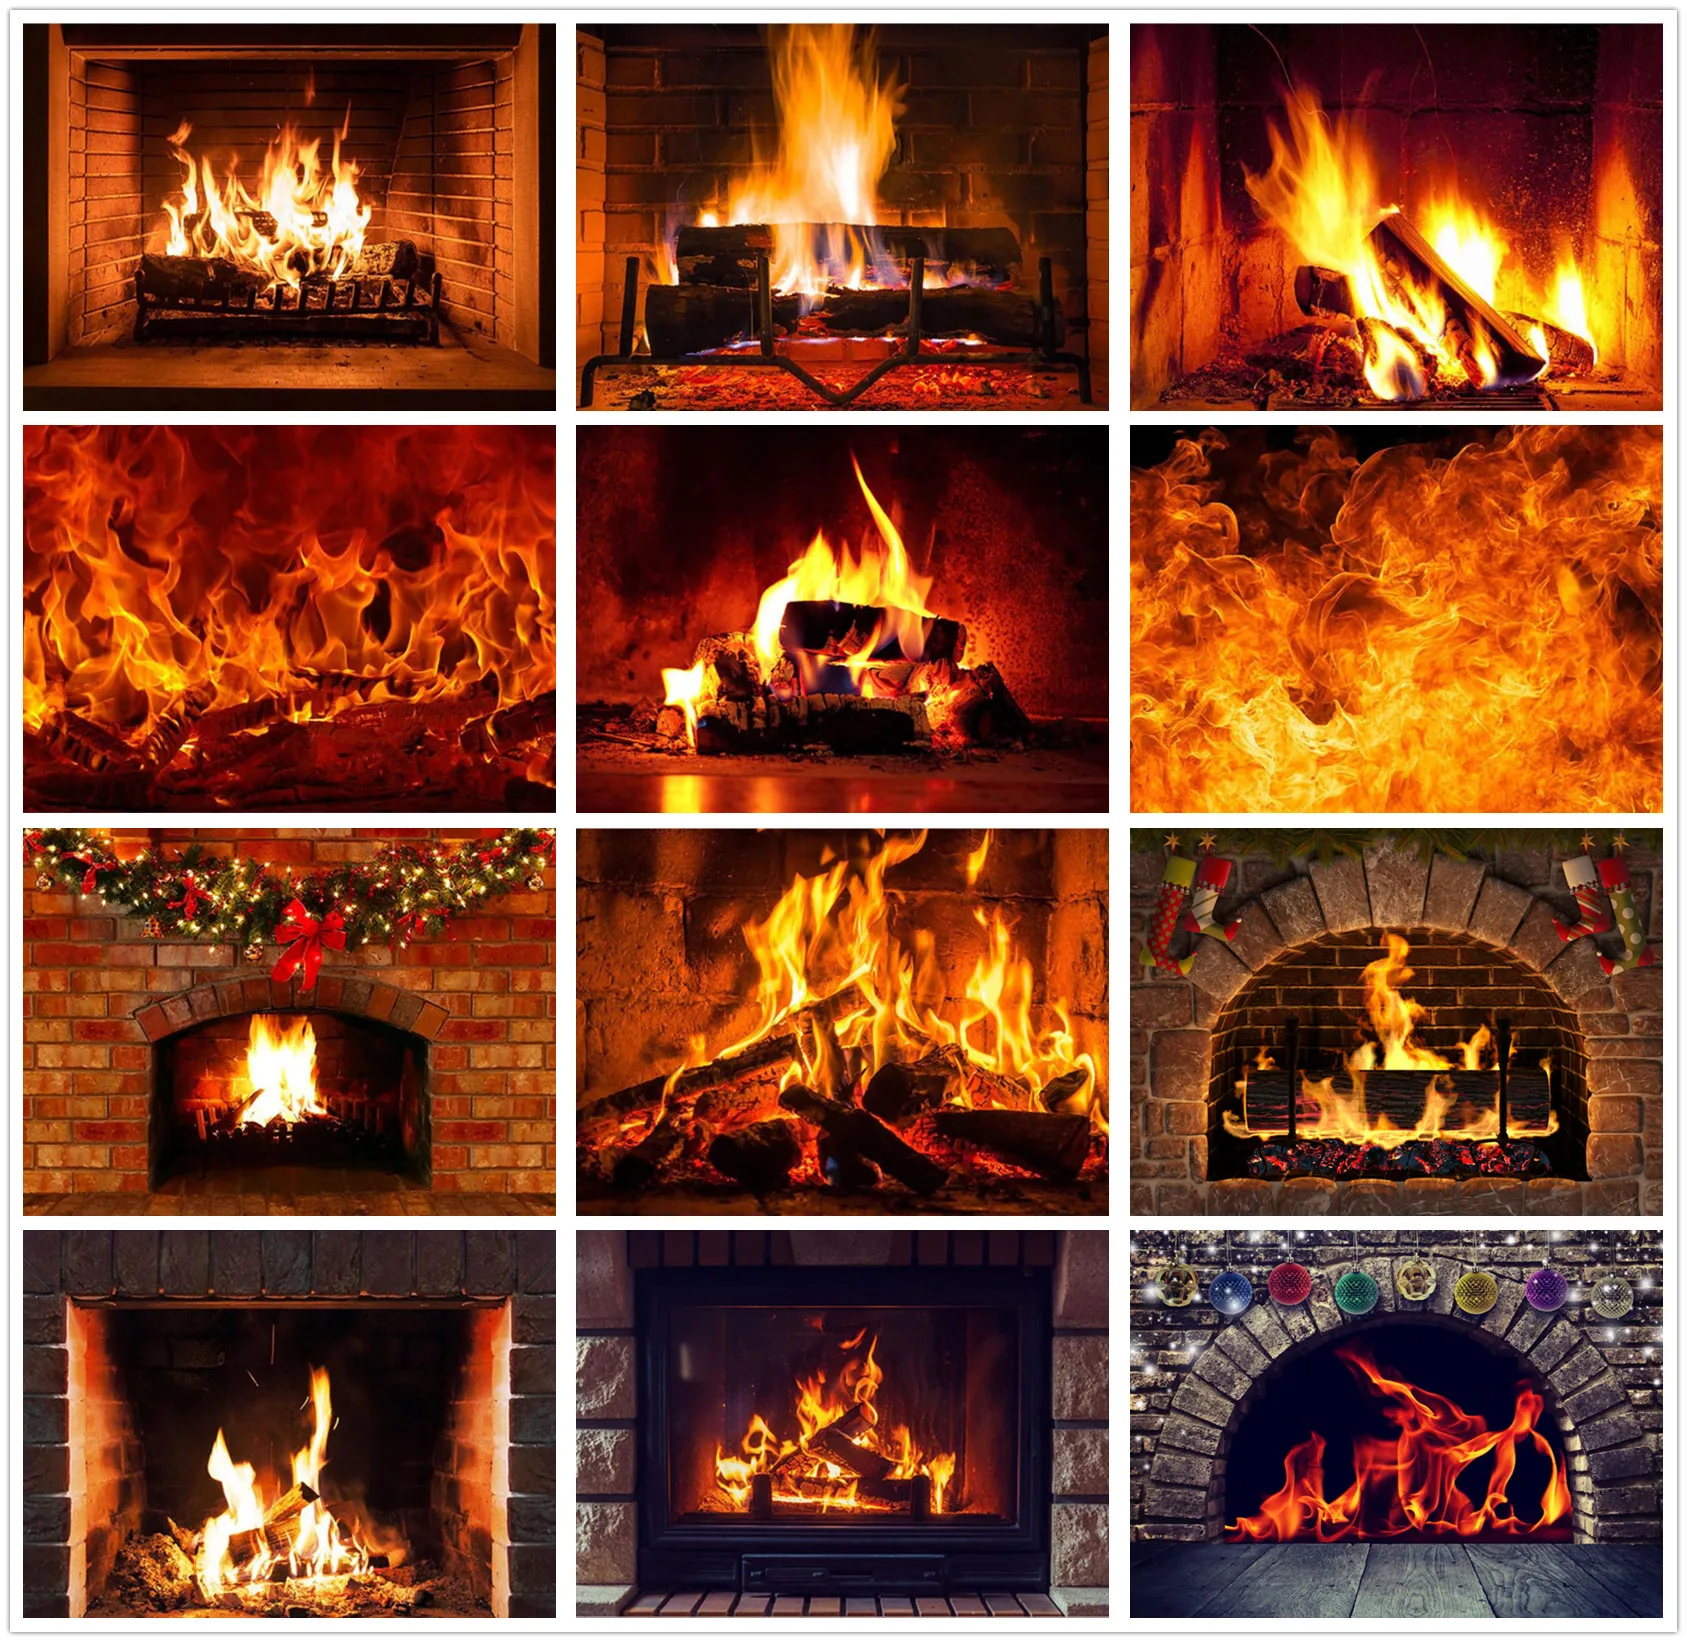 

Фон для фотосъемки HUAYI с изображением зимнего камина, деревянного огня, пламени, кирпича, рождественской вечеринки, фотостудии, реквизит